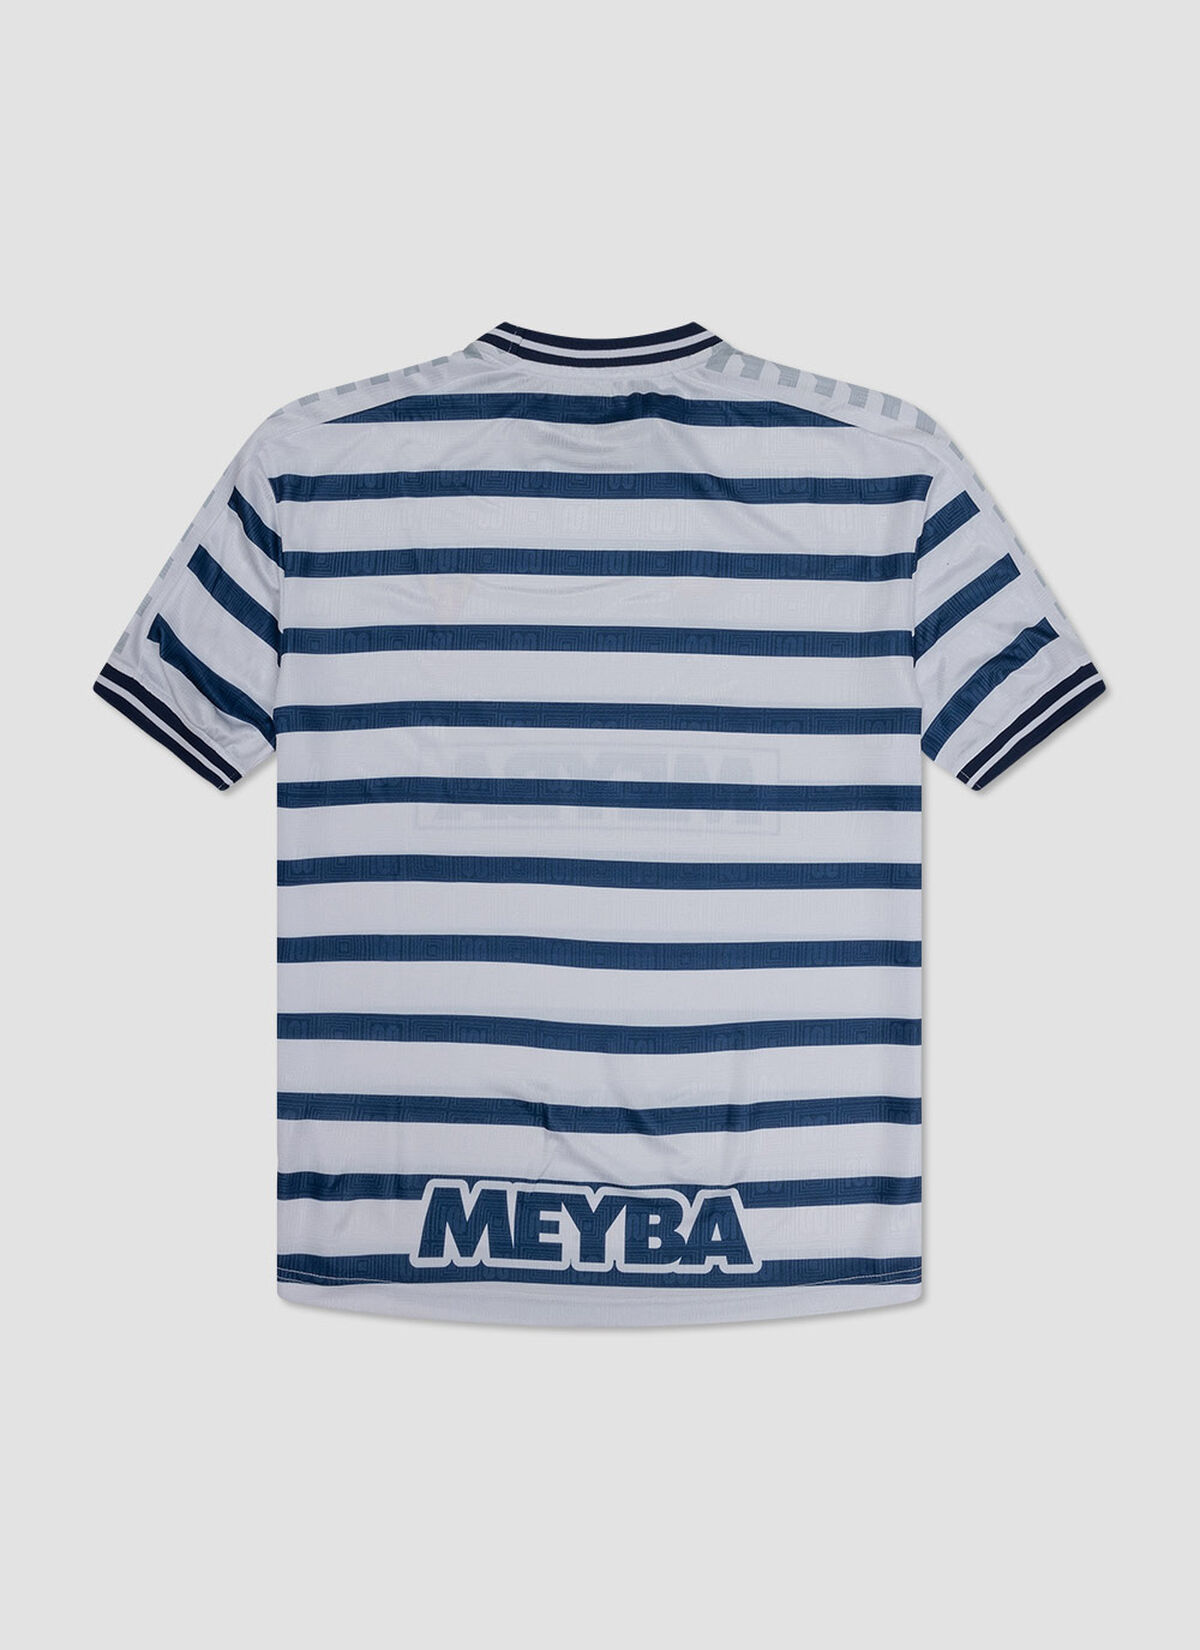 Meyba Nautical Stripe Tee - 100% Cotton, Navy/White, hi-res